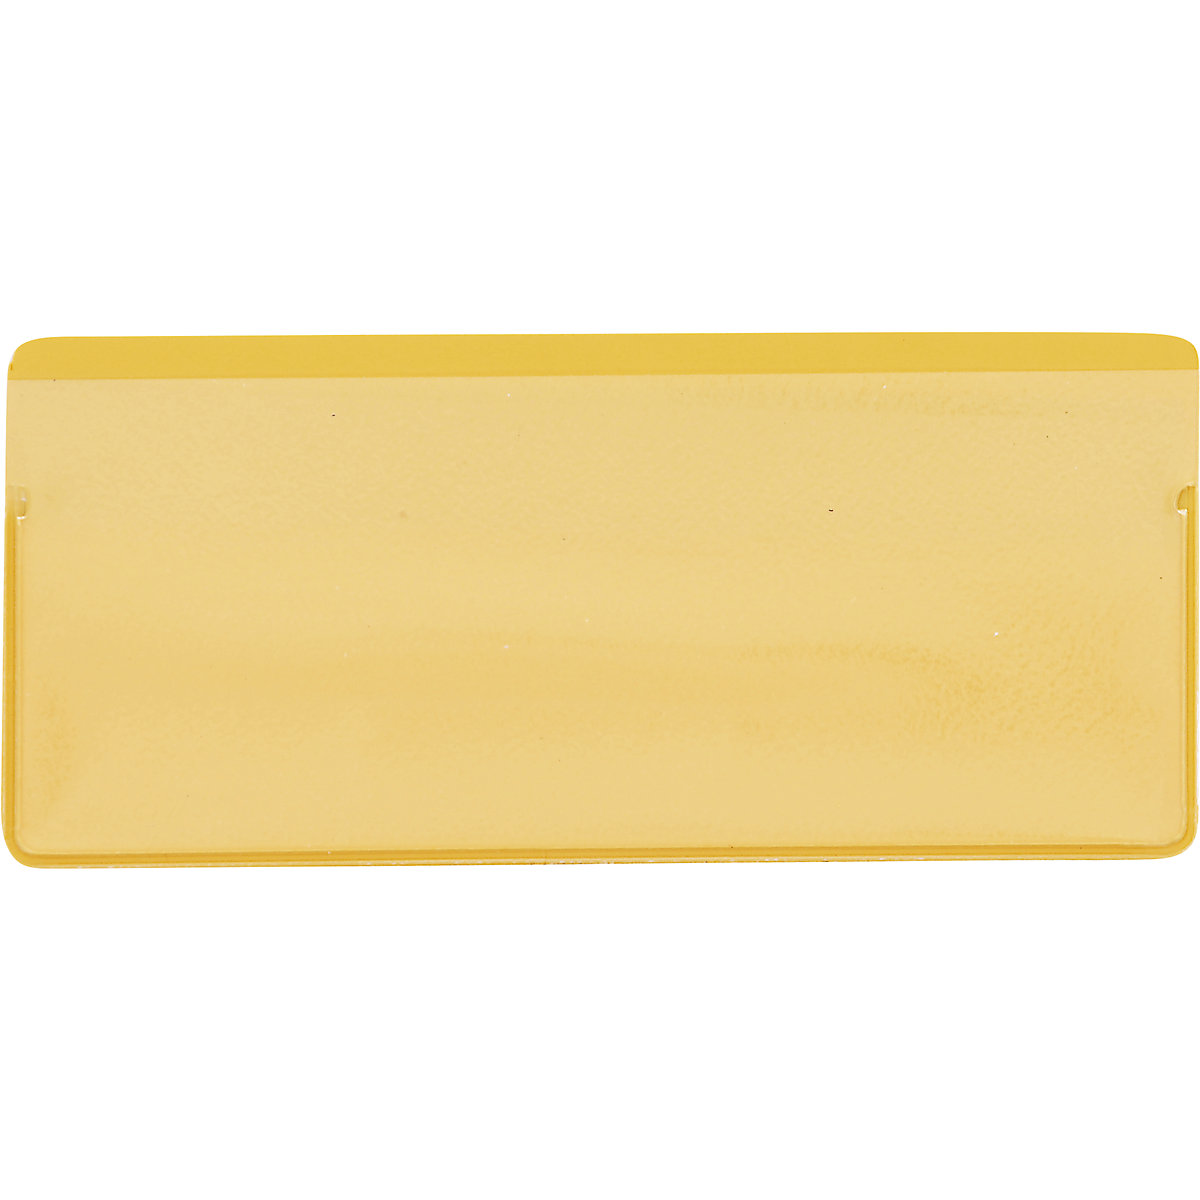 Porte-étiquettes magnétiques, lot de 50, avec bandes magnétiques, l x h 110 x 50 mm, jaune